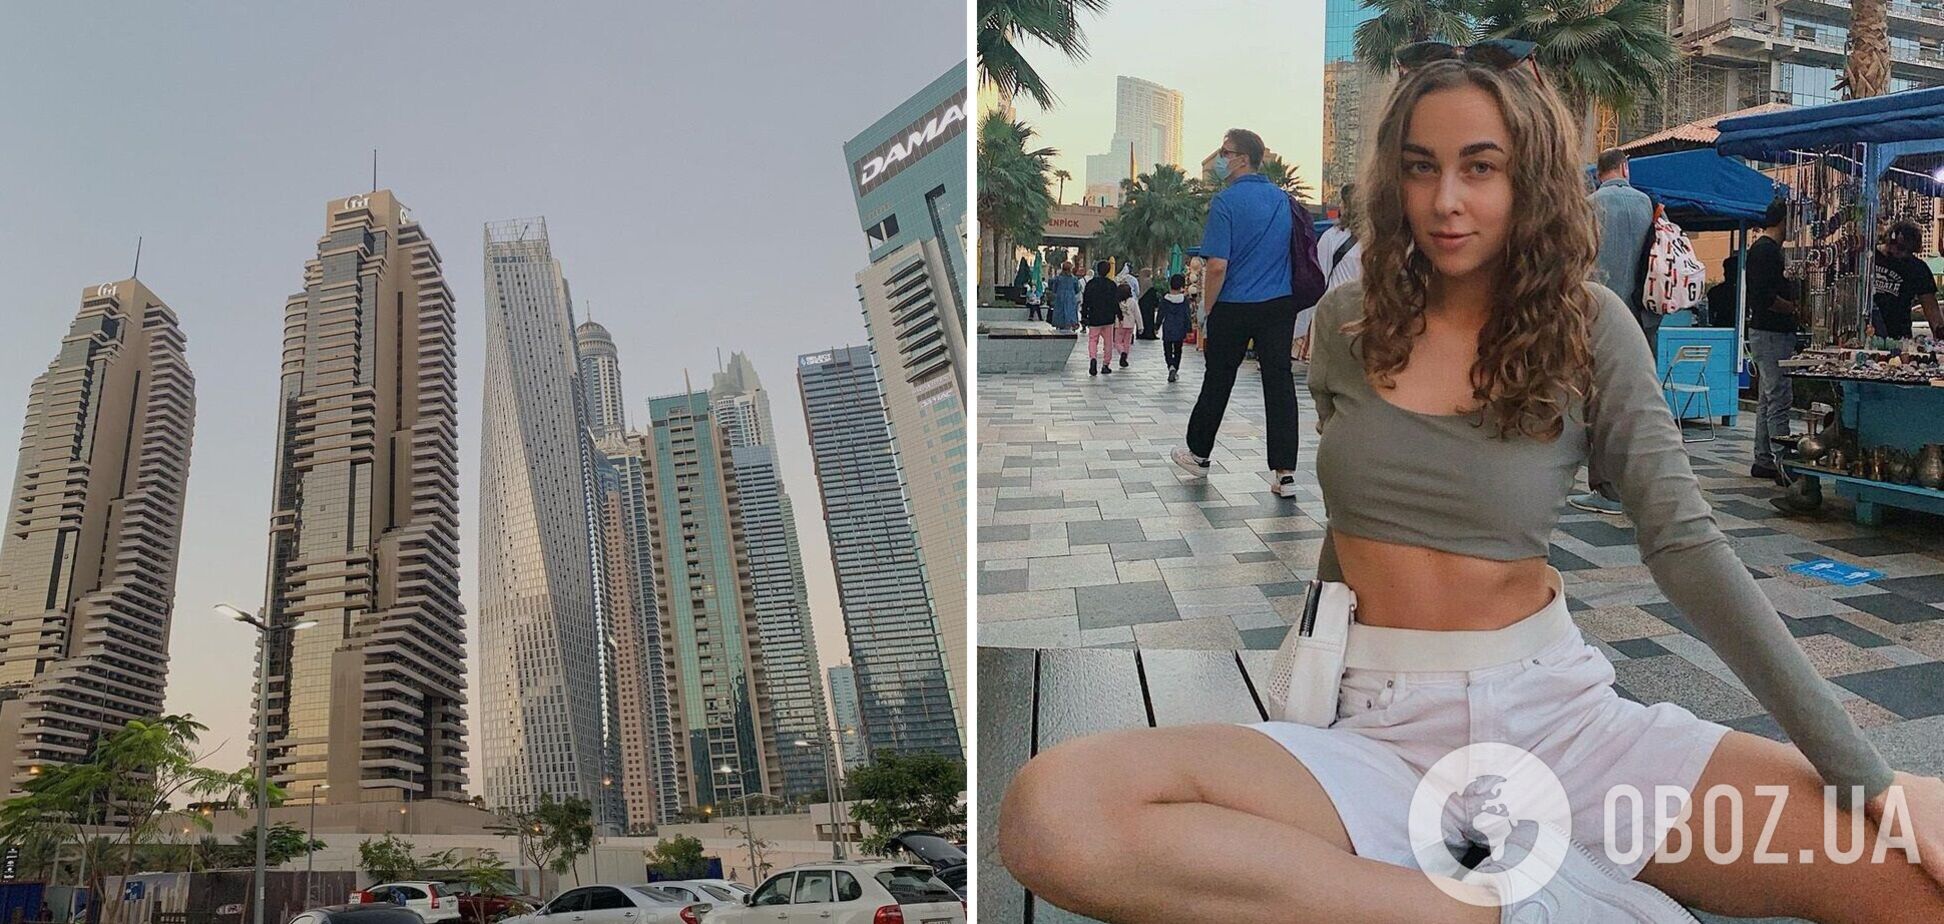 Українка, яка відхрестилася від голої фотосесії в Дубаї, показала свій «максимум» оголених фото